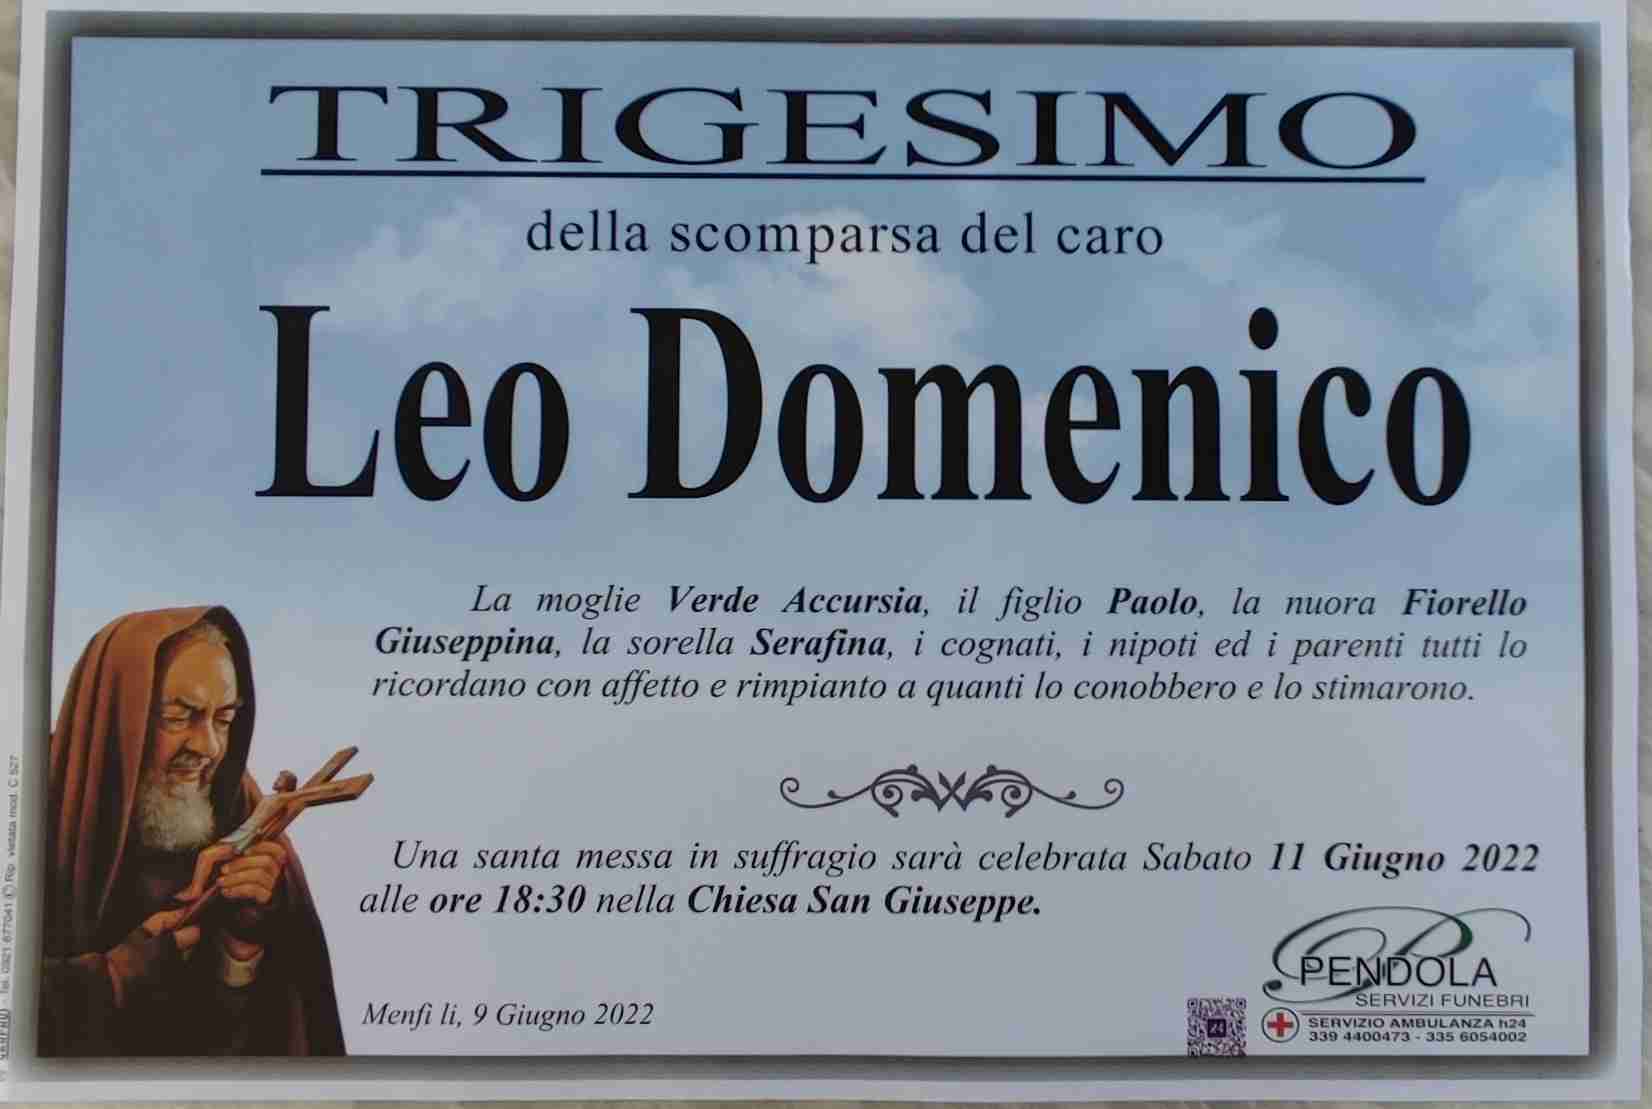 Leo Domenico